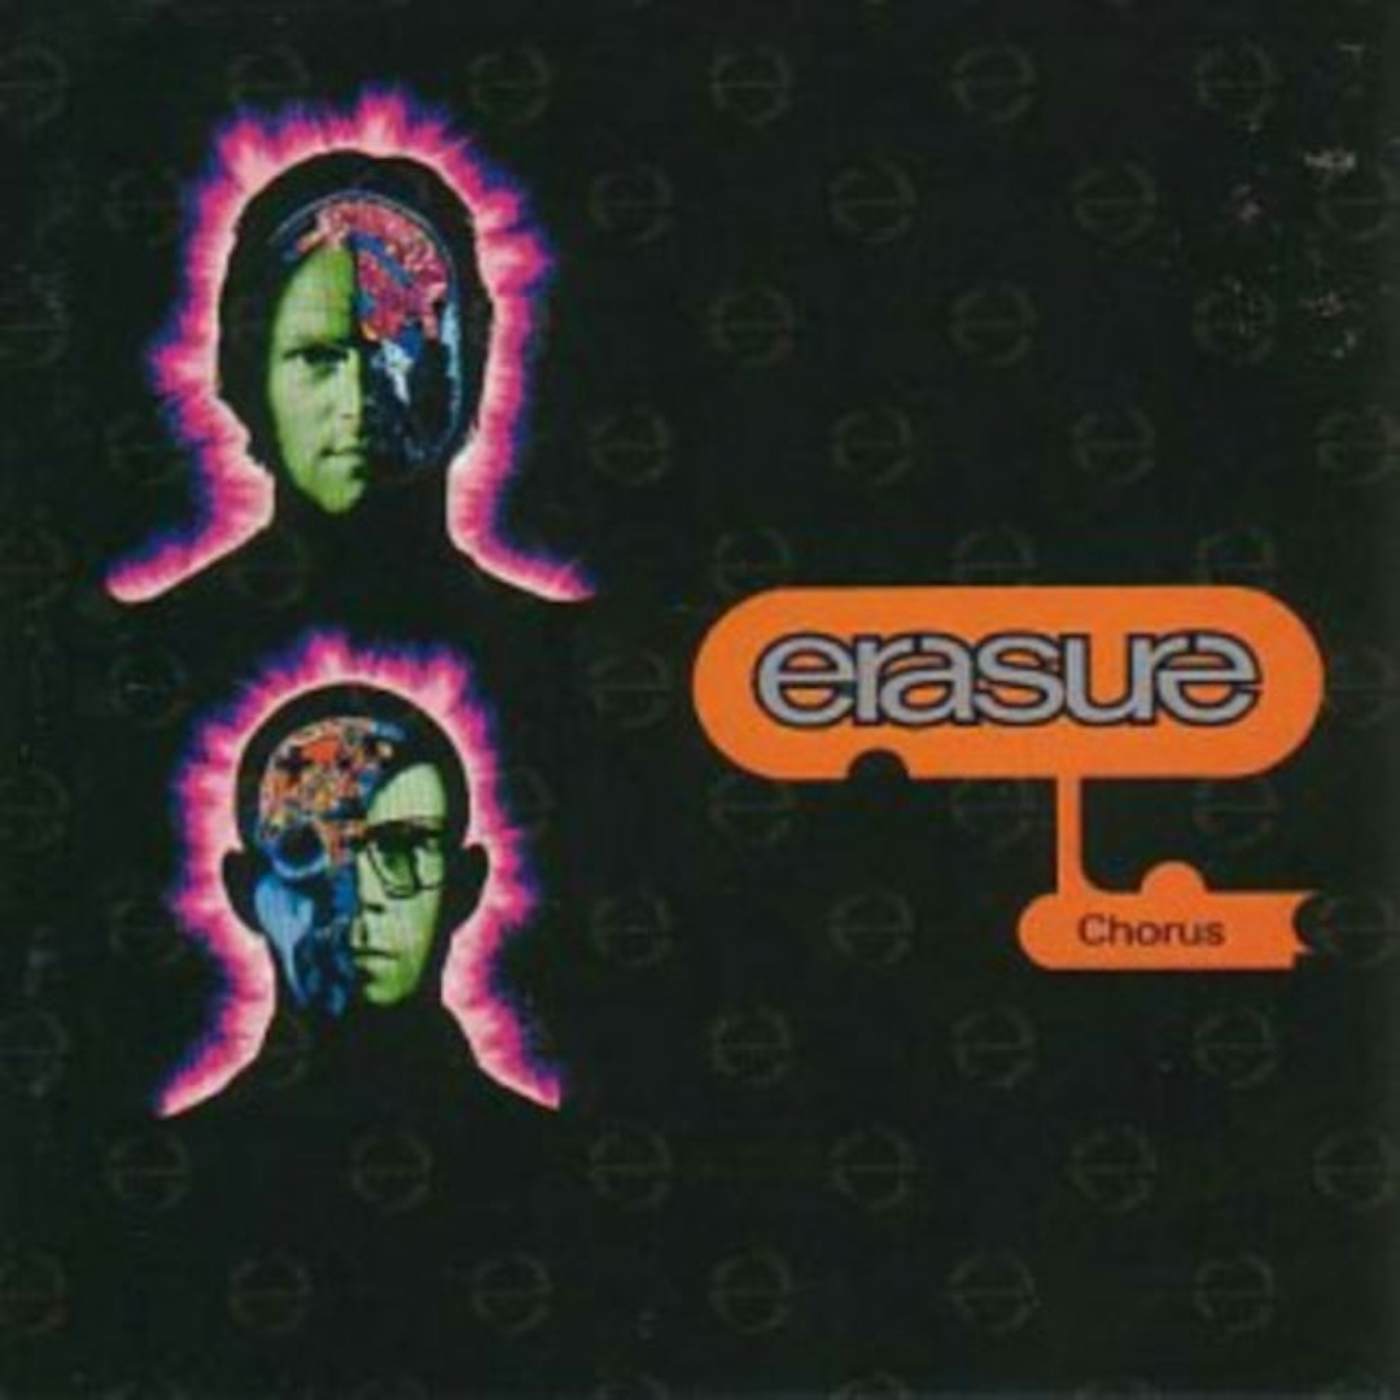 Erasure LP Vinyl Record - Chorus